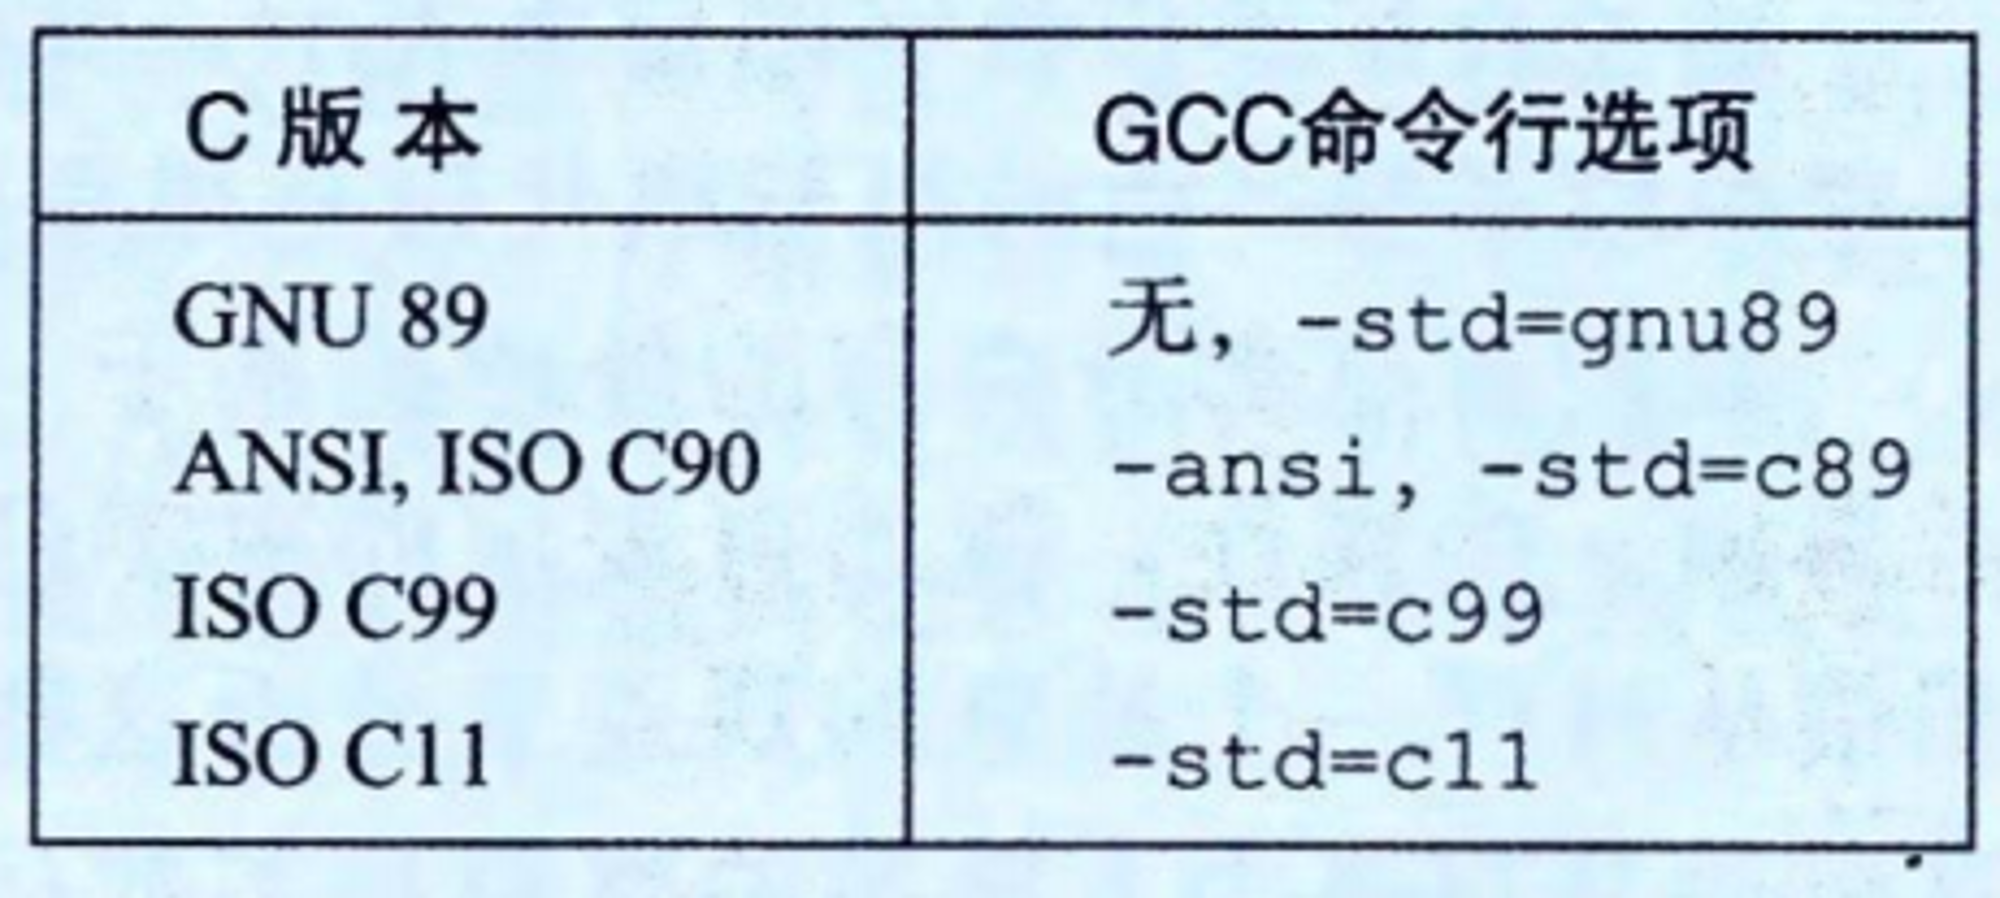 图2-1 向GCC指定不同的C语言版本